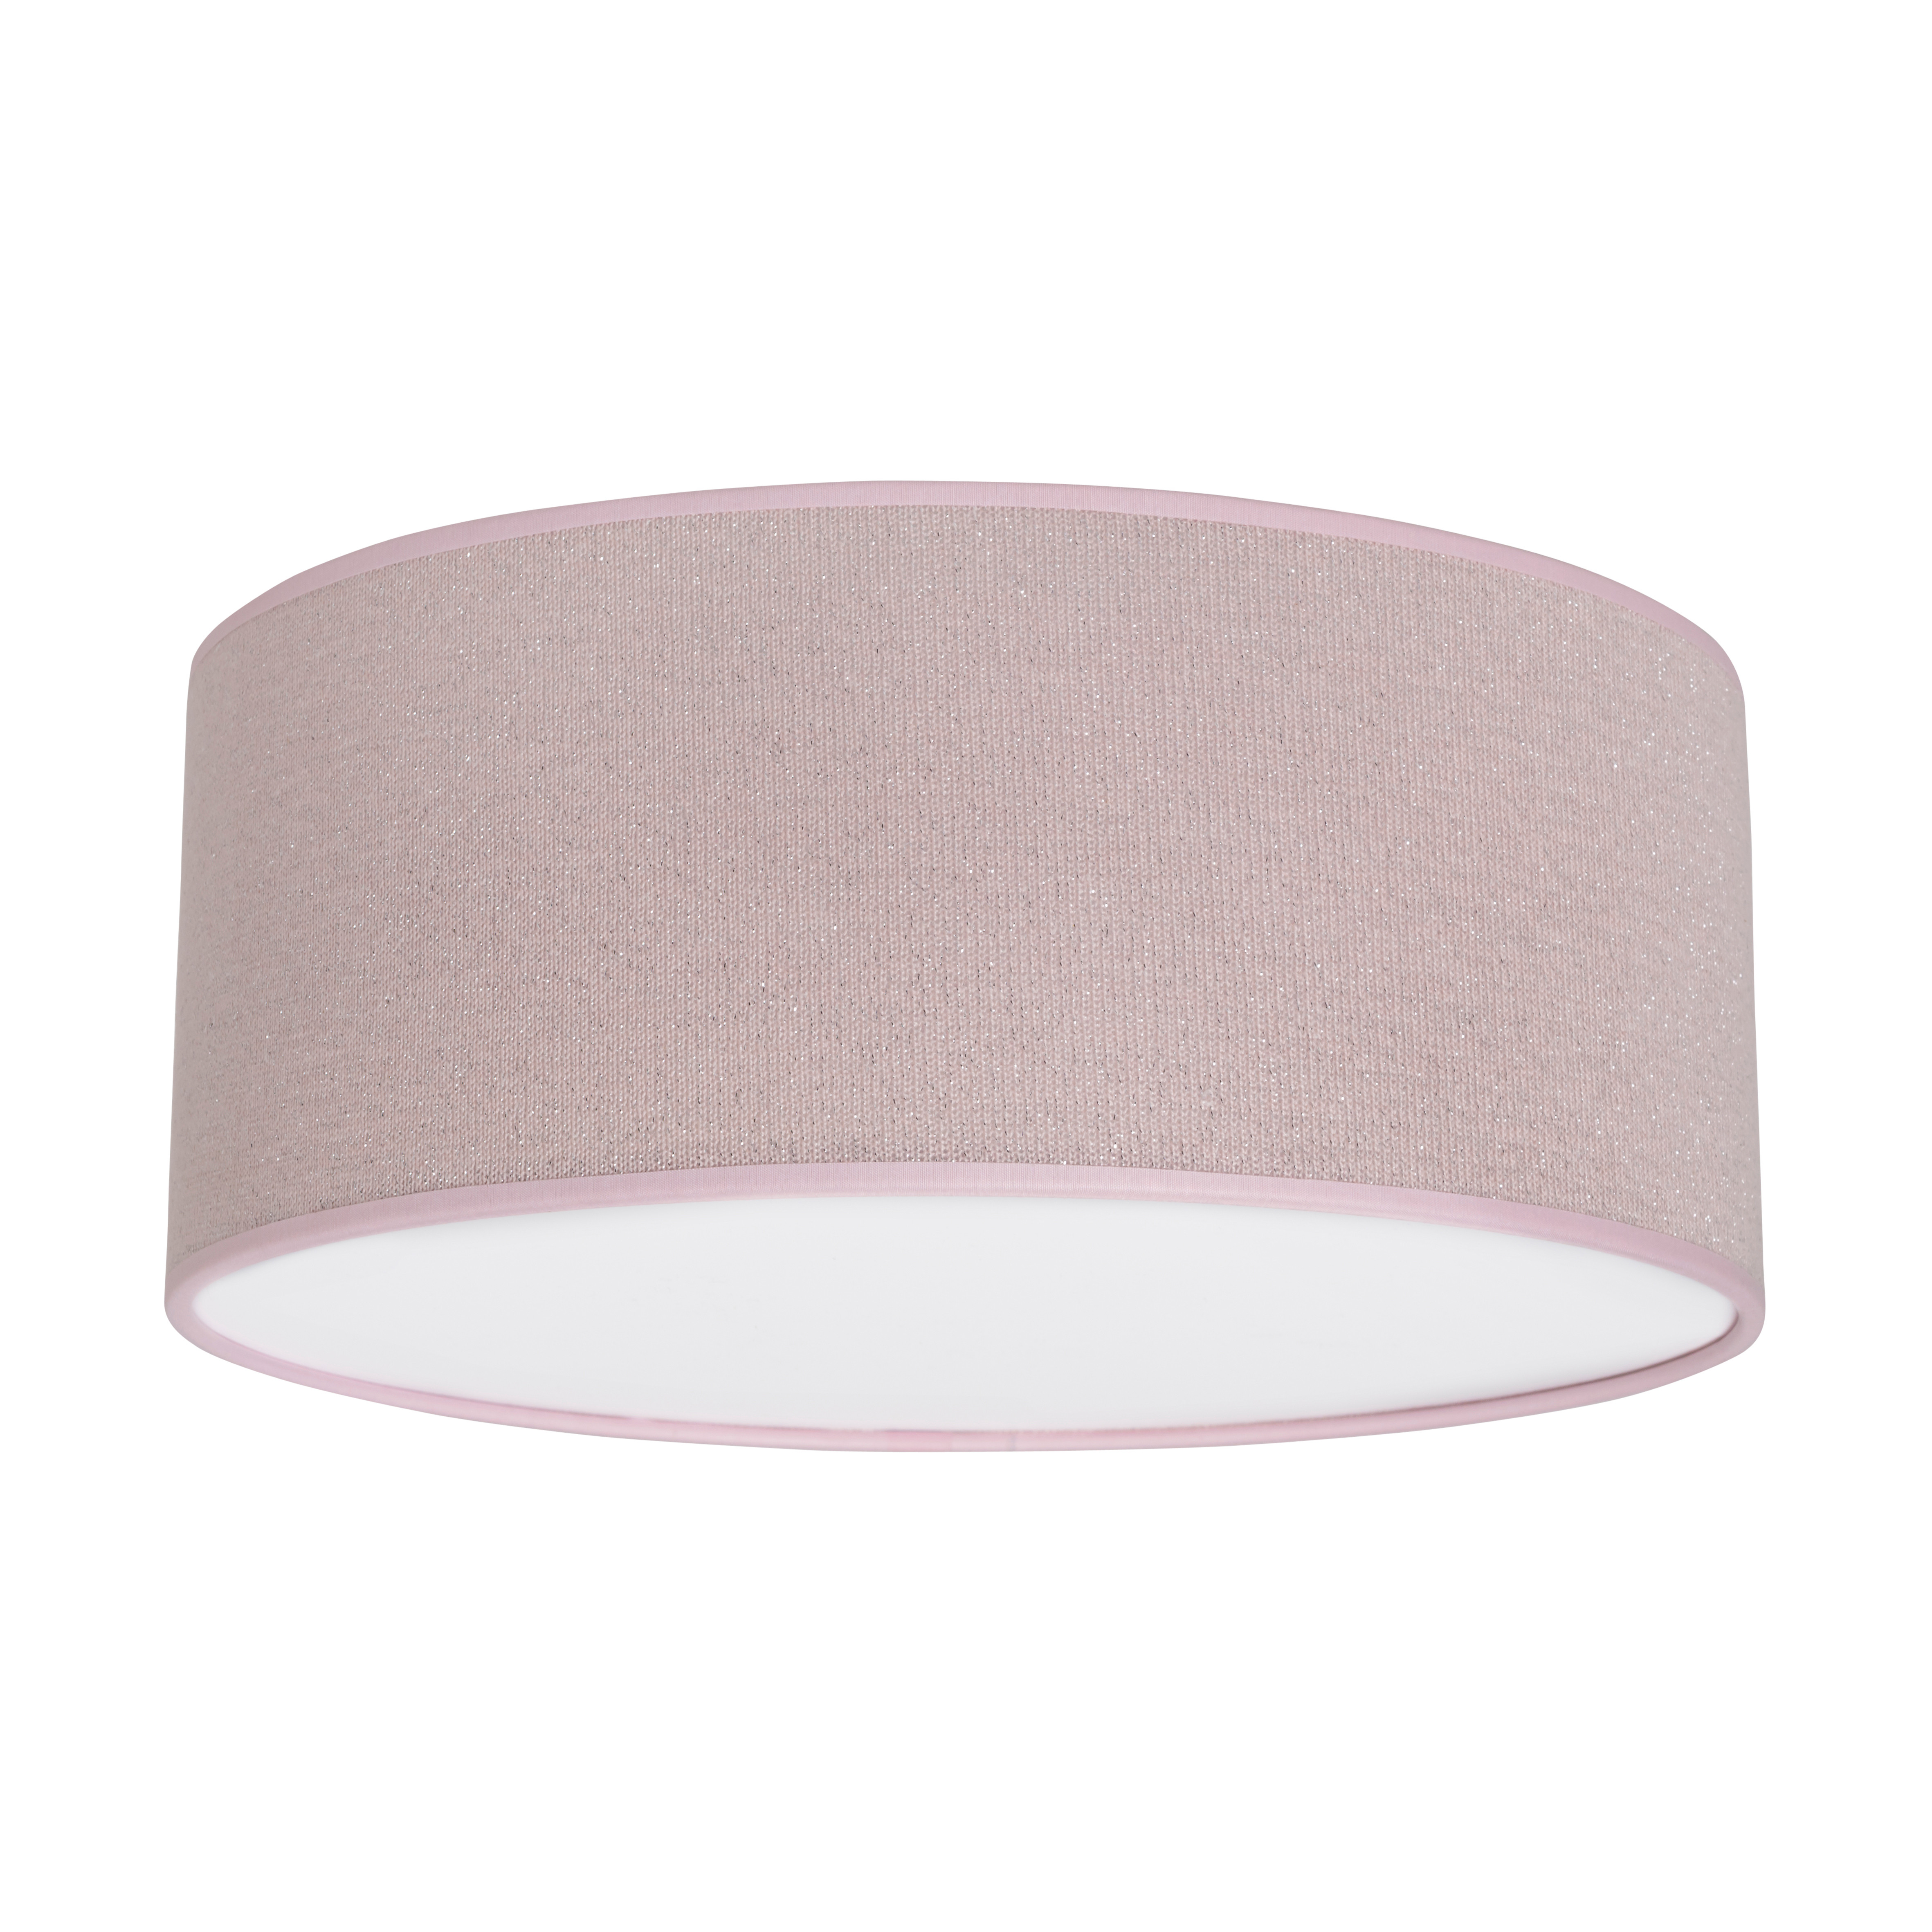 Lampe de plafond Sparkle rose-argent mêlé - Ø35 cm